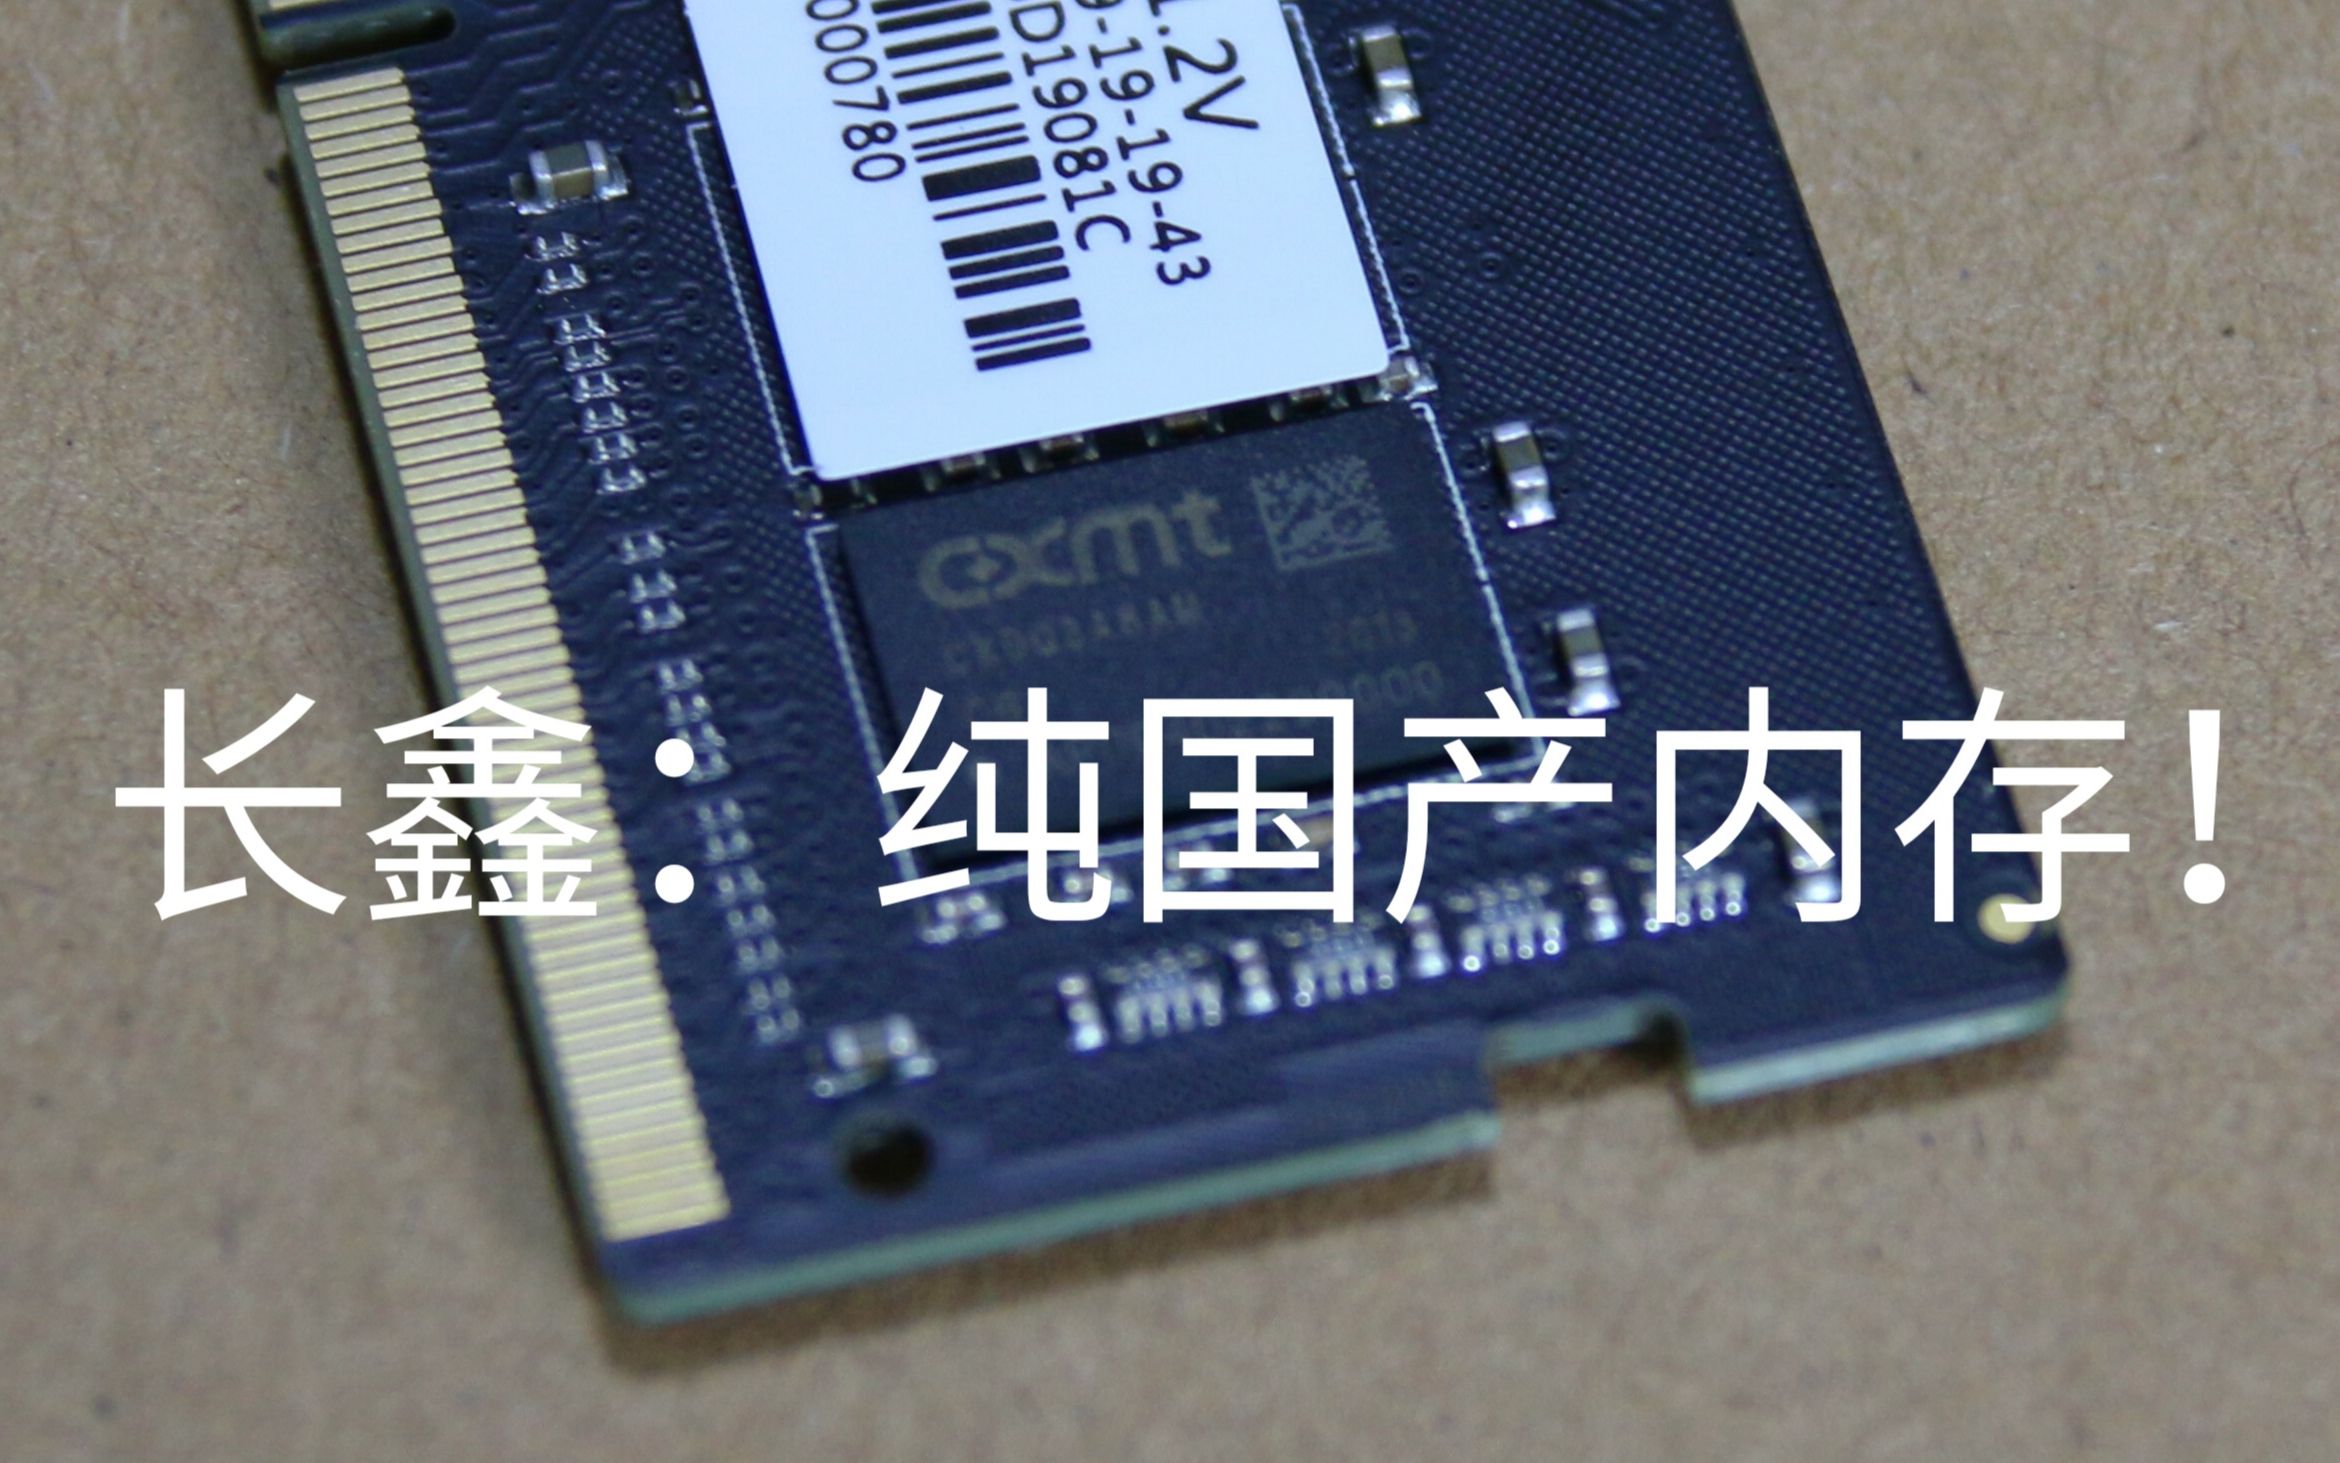 长鑫何时推出 DDR5 内存？科技革新之路面临诸多难关